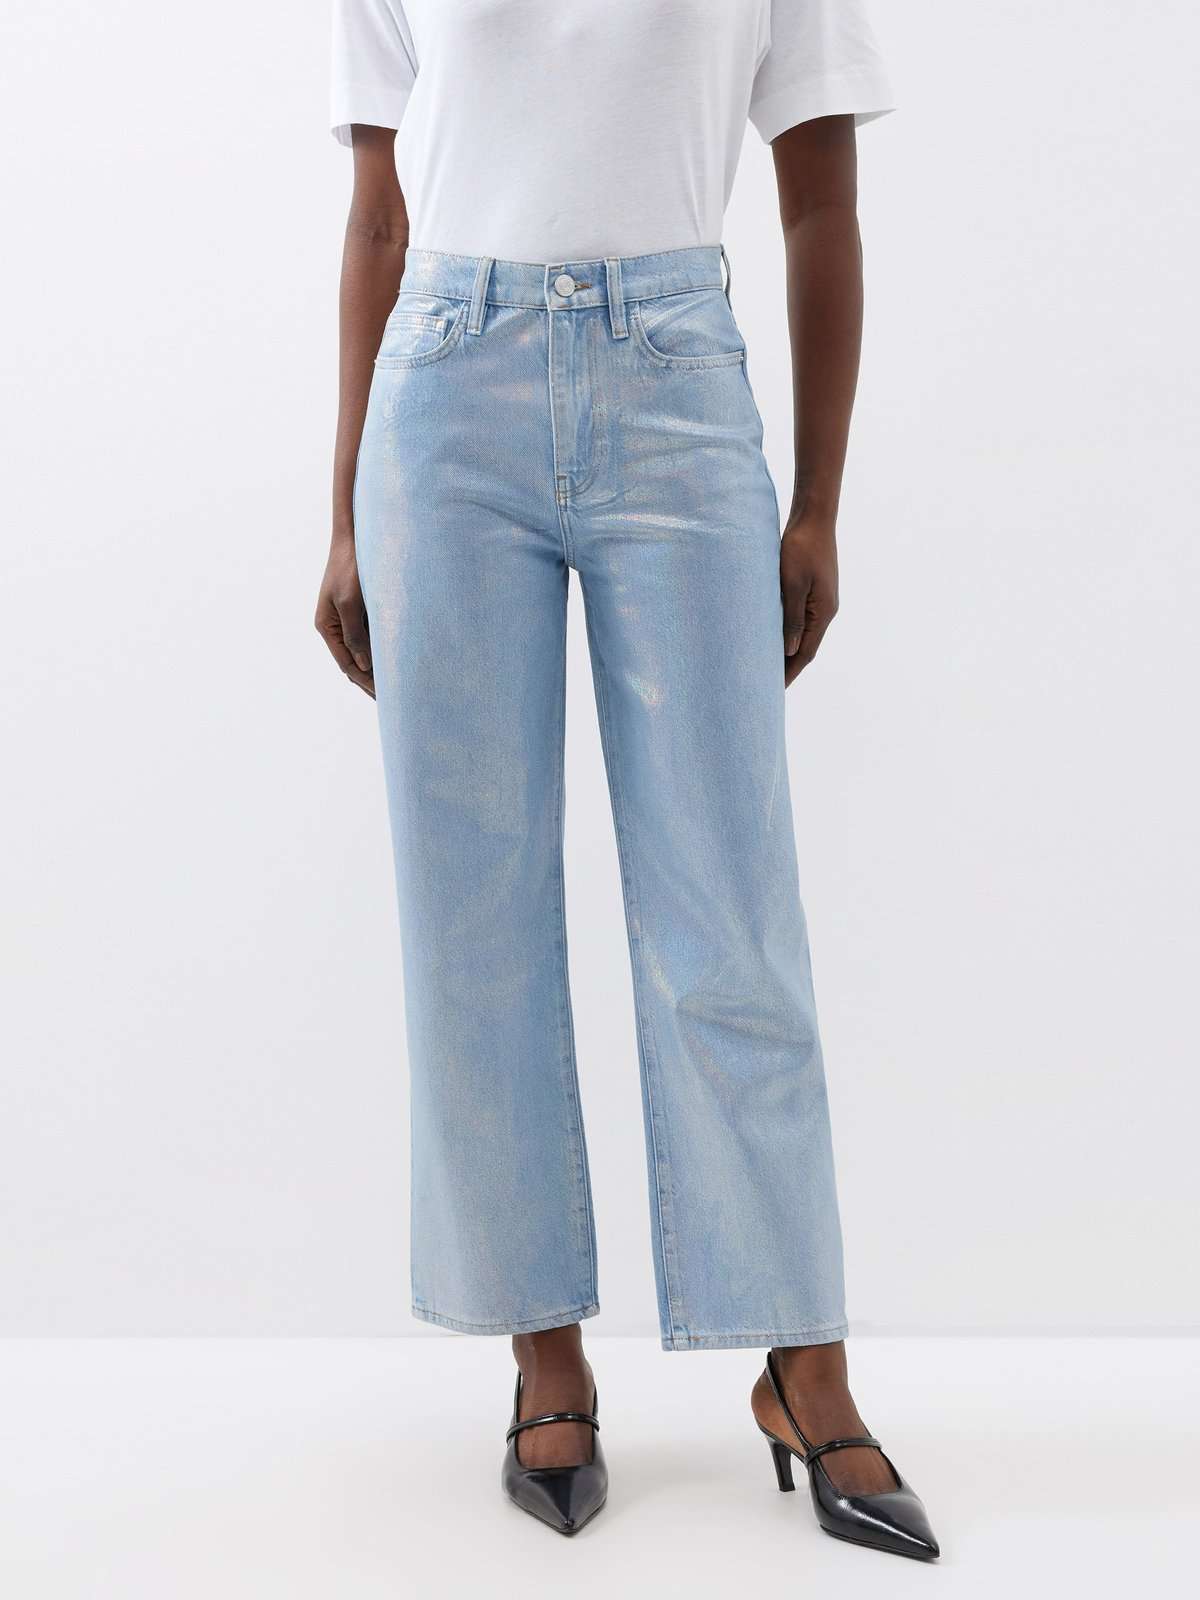 Le Jane укороченные джинсы прямого кроя с эффектом металлик